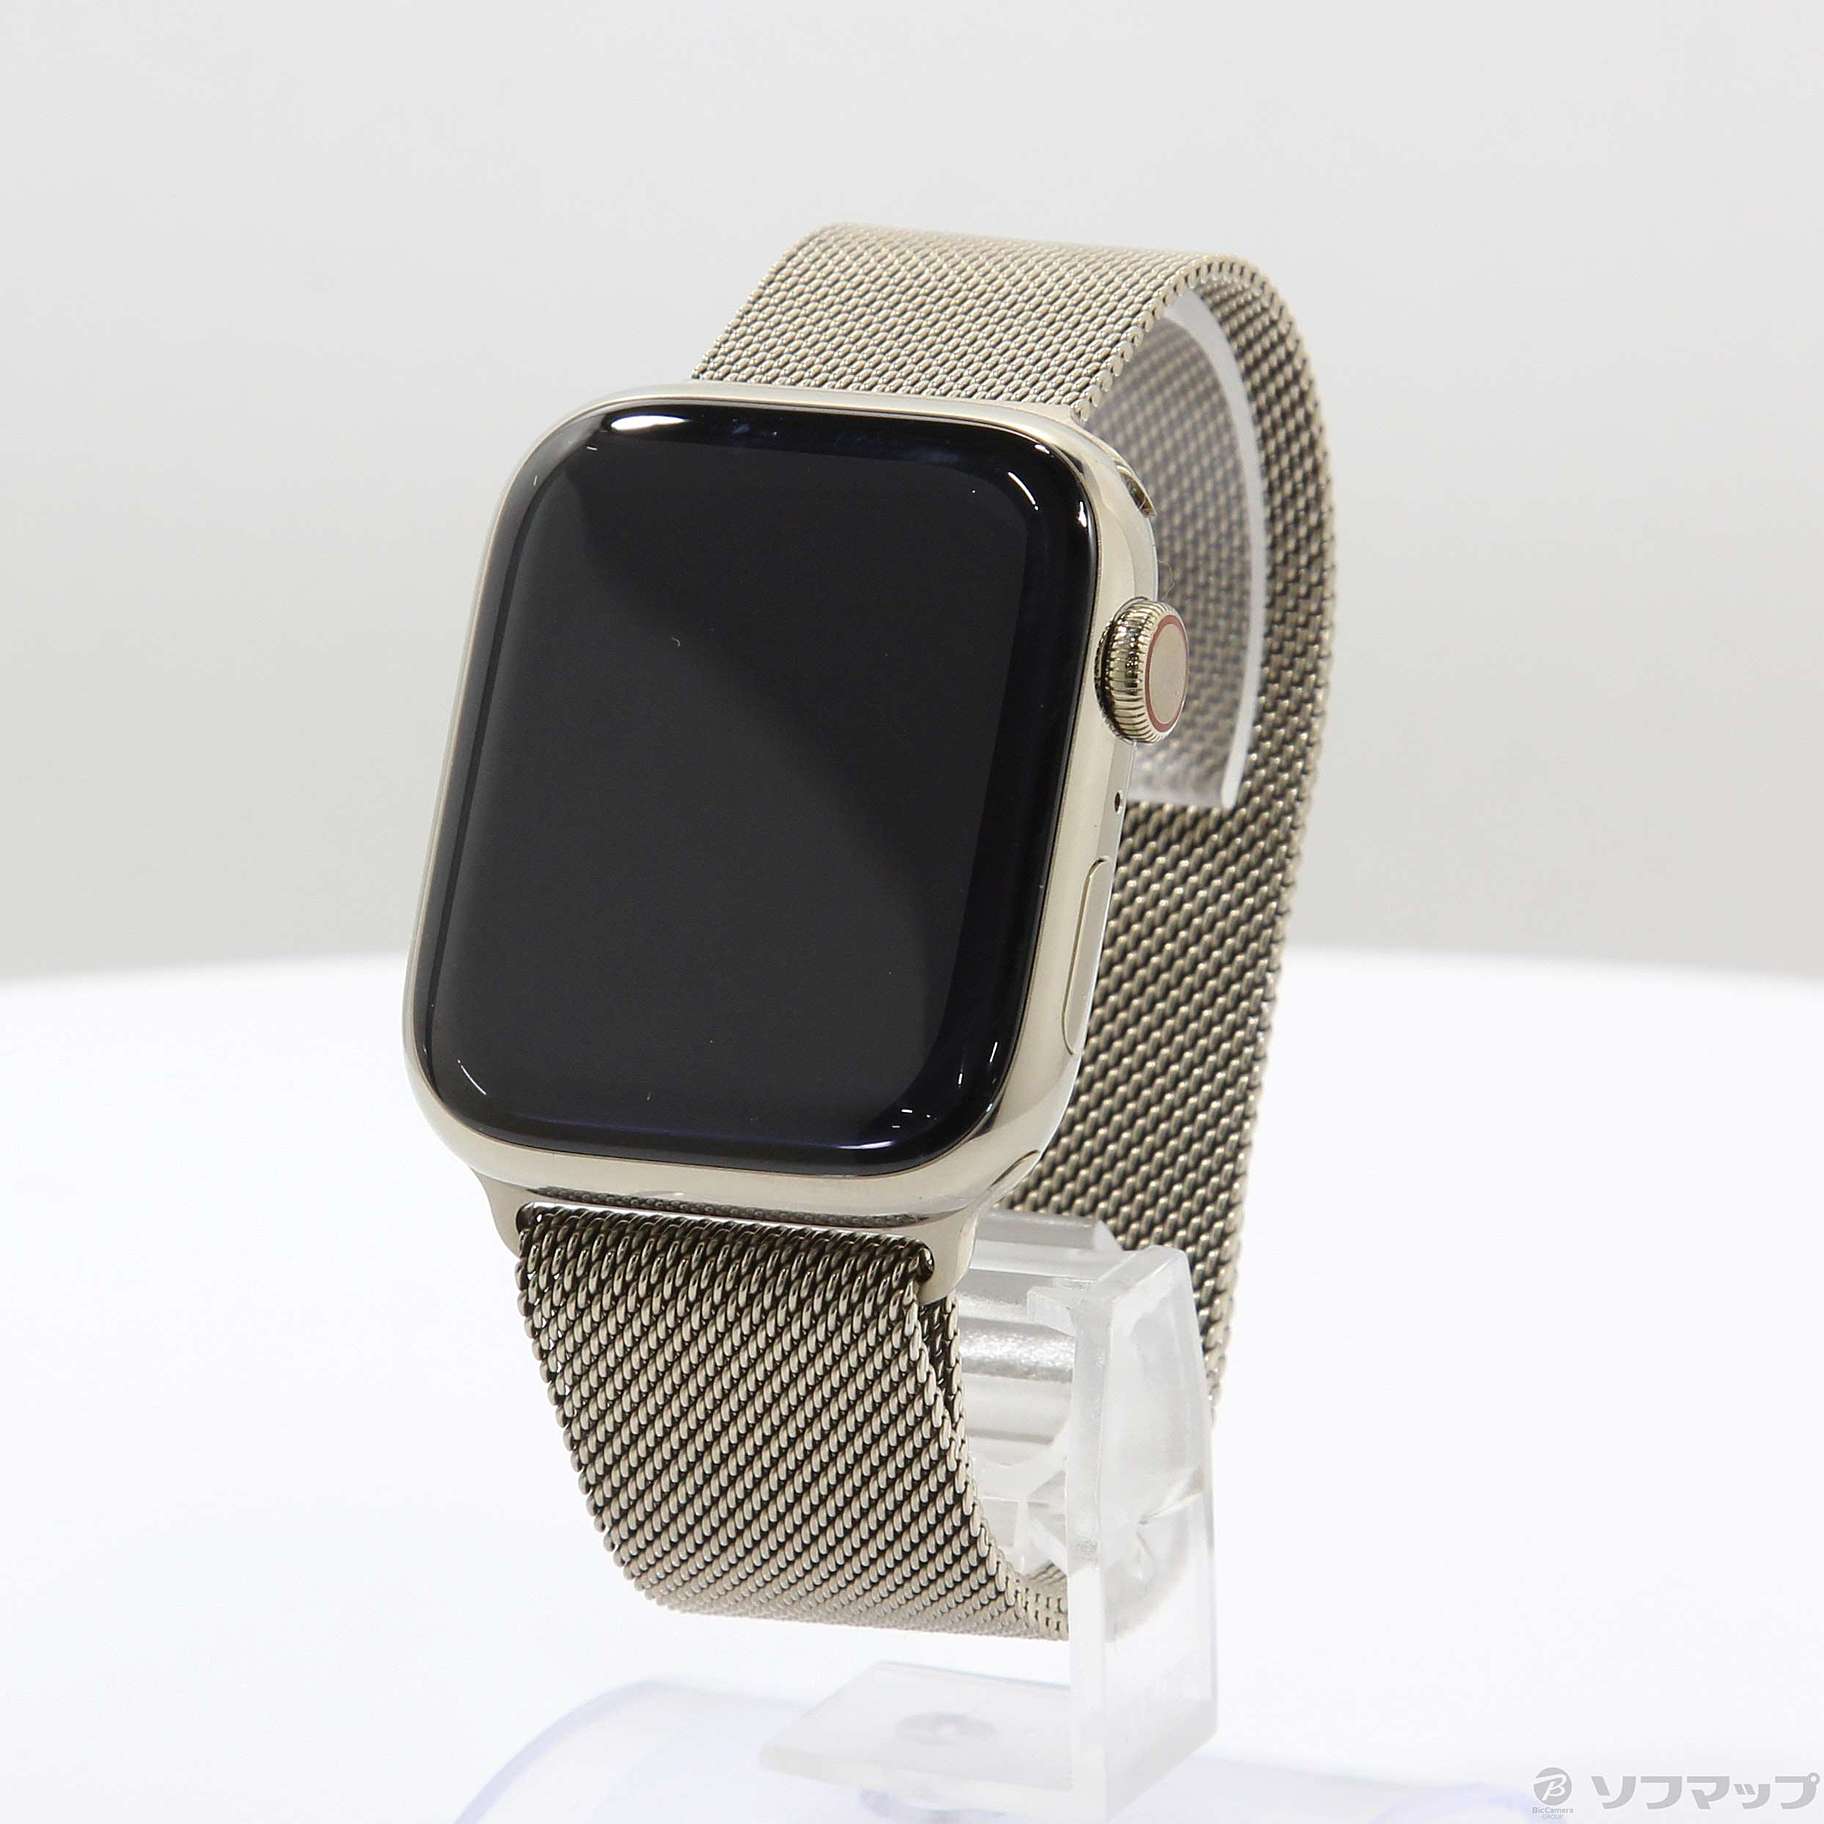 13,860円【美品】Apple Watch Series 7 GPS ゴールド